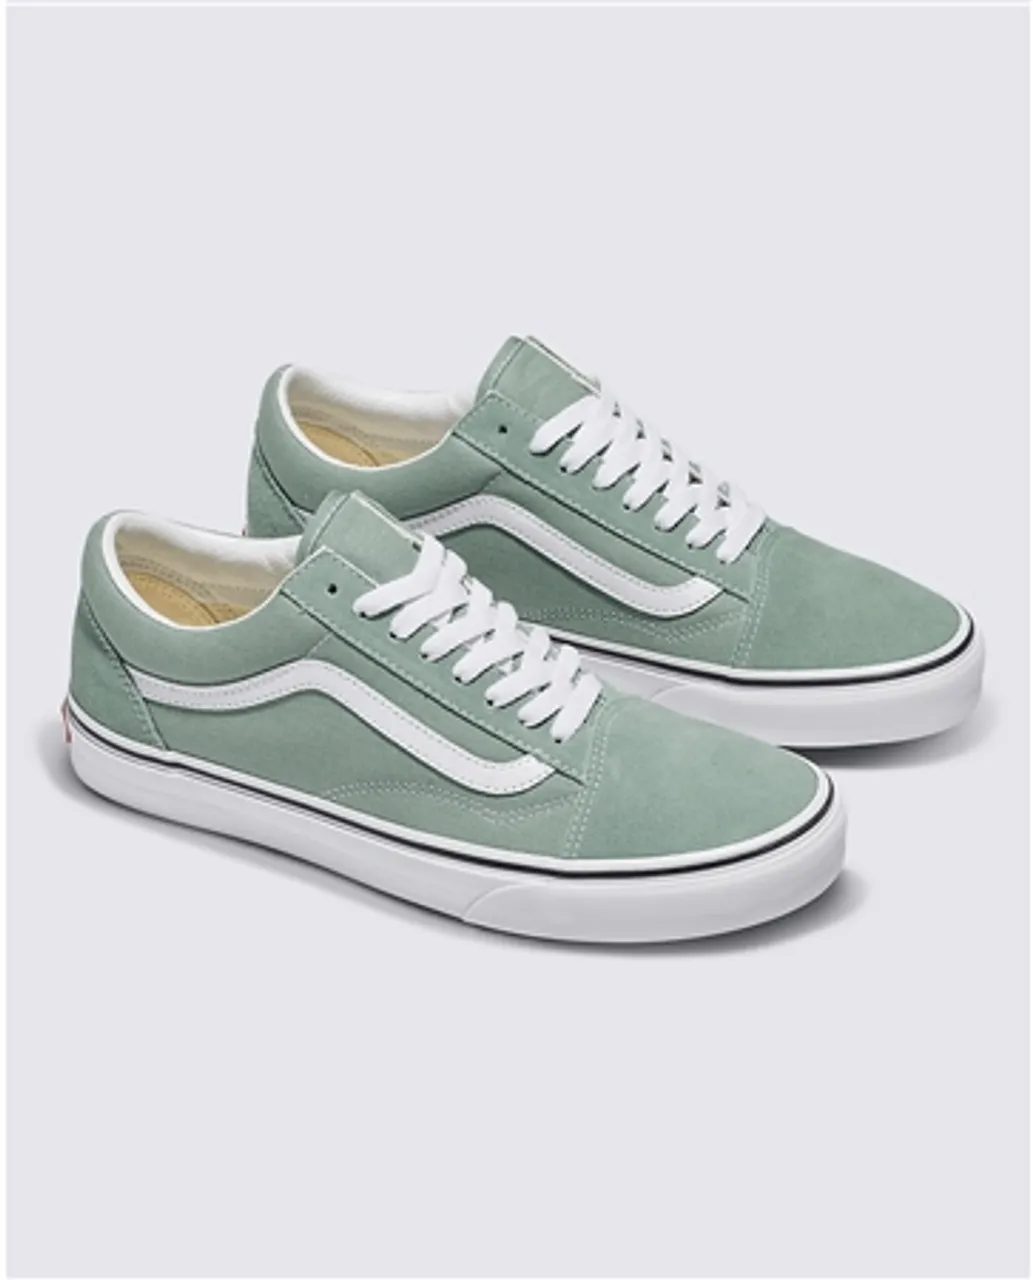 Vans Old Skool Shoes - Iceberg Green - UK 4 (EU 36.5)